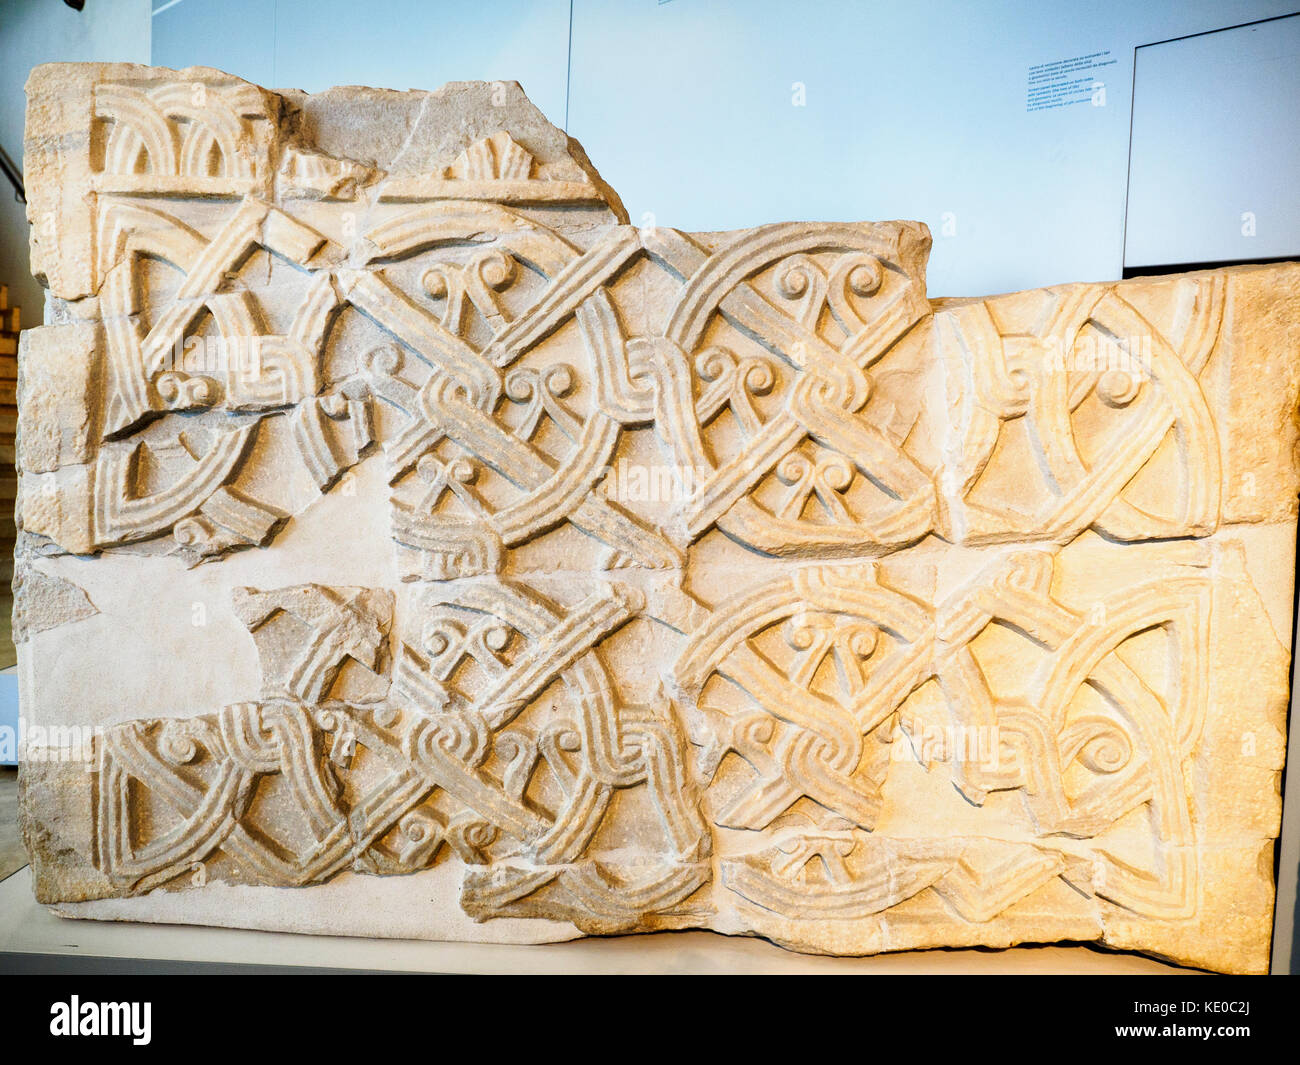 Panneau d'écran décoré des deux côtés avec des motifs symboliques (l'arbre de vie) et géométriques (une série de cercles intersectés par des diagonales). Fin du 8ème-début du 9ème siècle - Crypta Balbi (Musée National de Rome) - Italie Banque D'Images